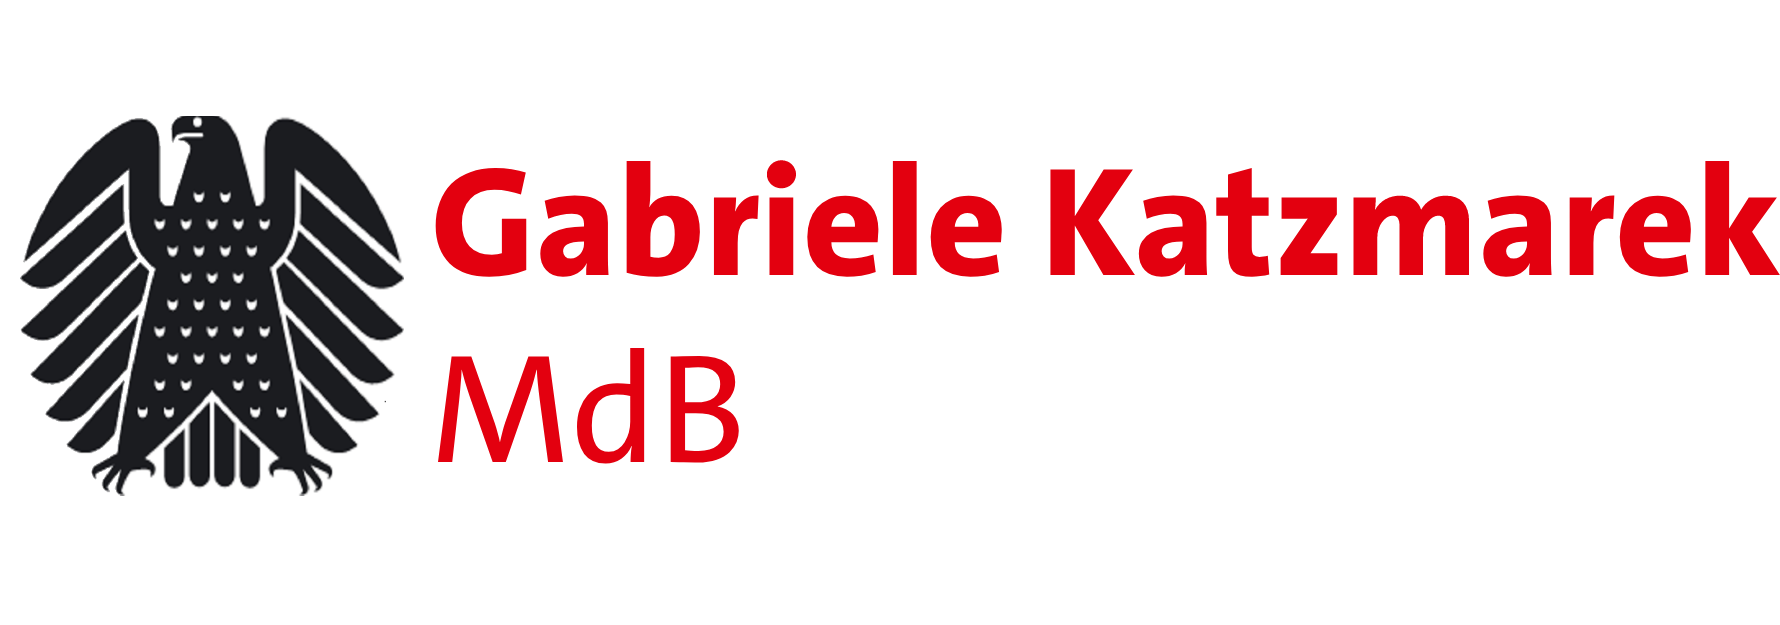 Gabriele Katzmarek